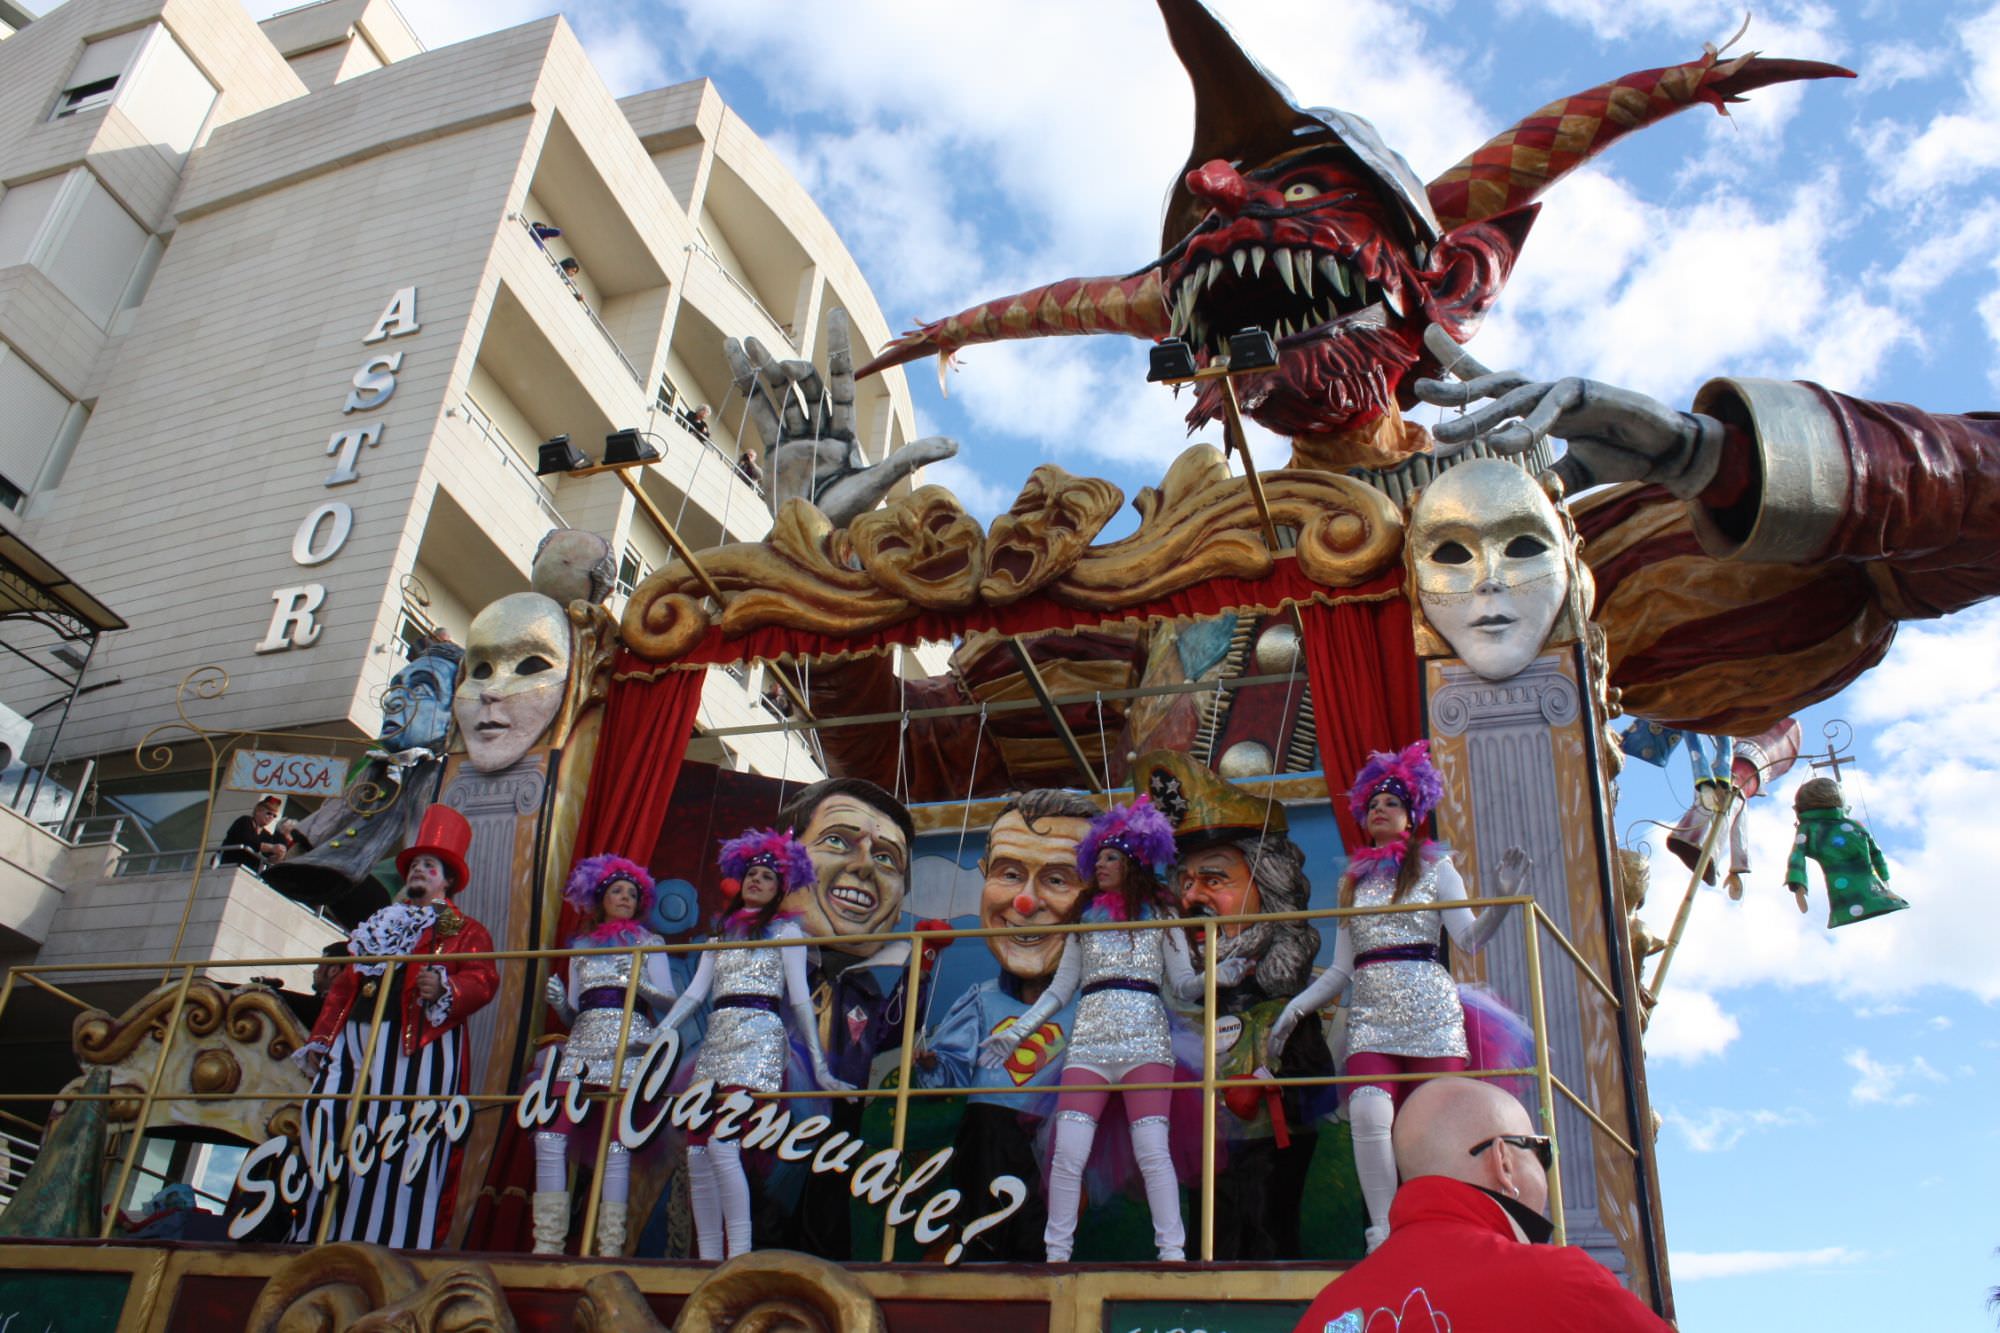 Carnevale di Viareggio 2014. Allegrucci vince per i carri di seconda categoria: le classifiche